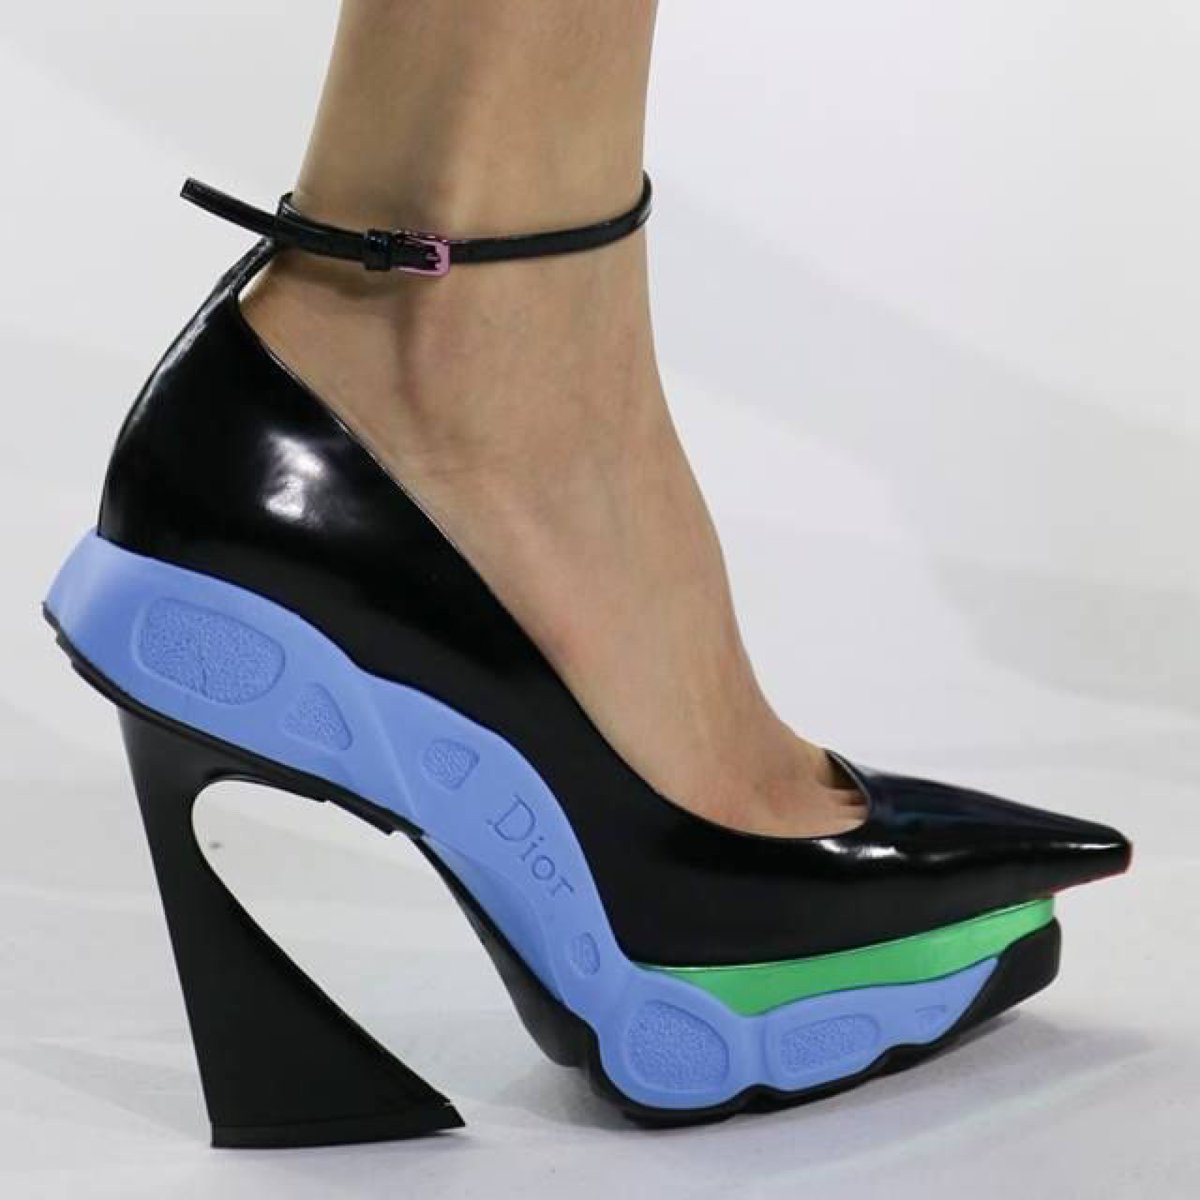 the Dior « Sneakers Heels » par Raf Simonsfuturistic, special, sûrement bizarre pour certains but still FASHION.